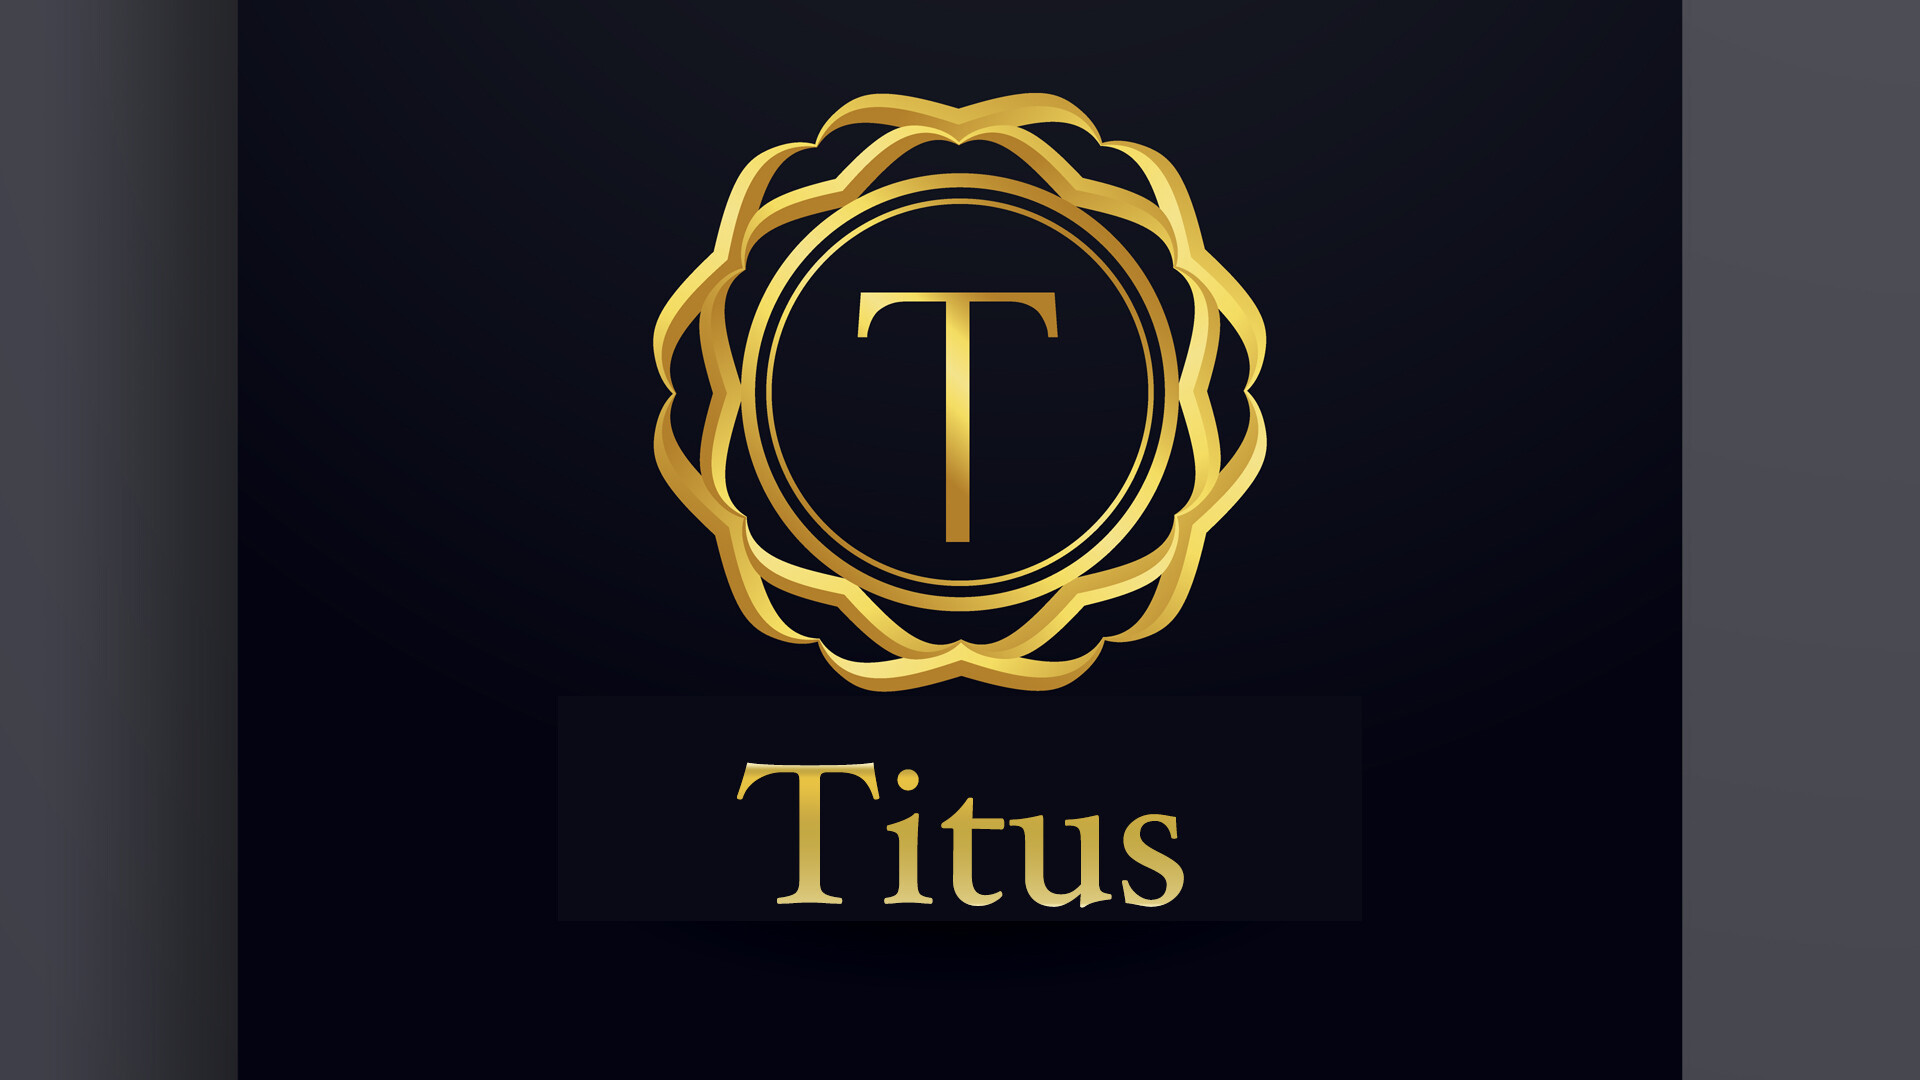 Titus 3